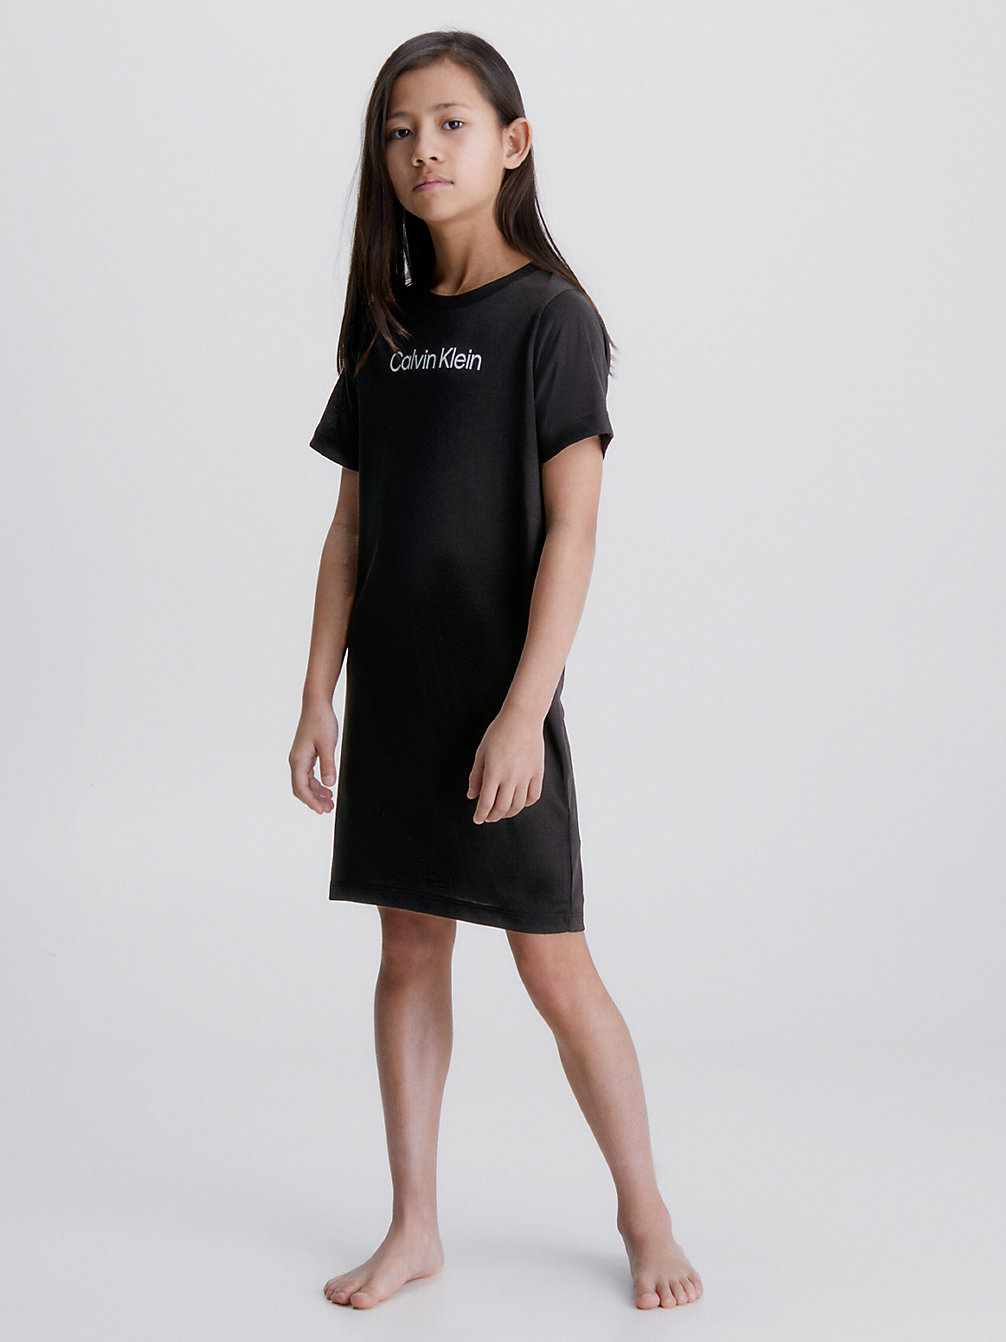 PVH BLACK Night Dress - CK One undefined girls Calvin Klein